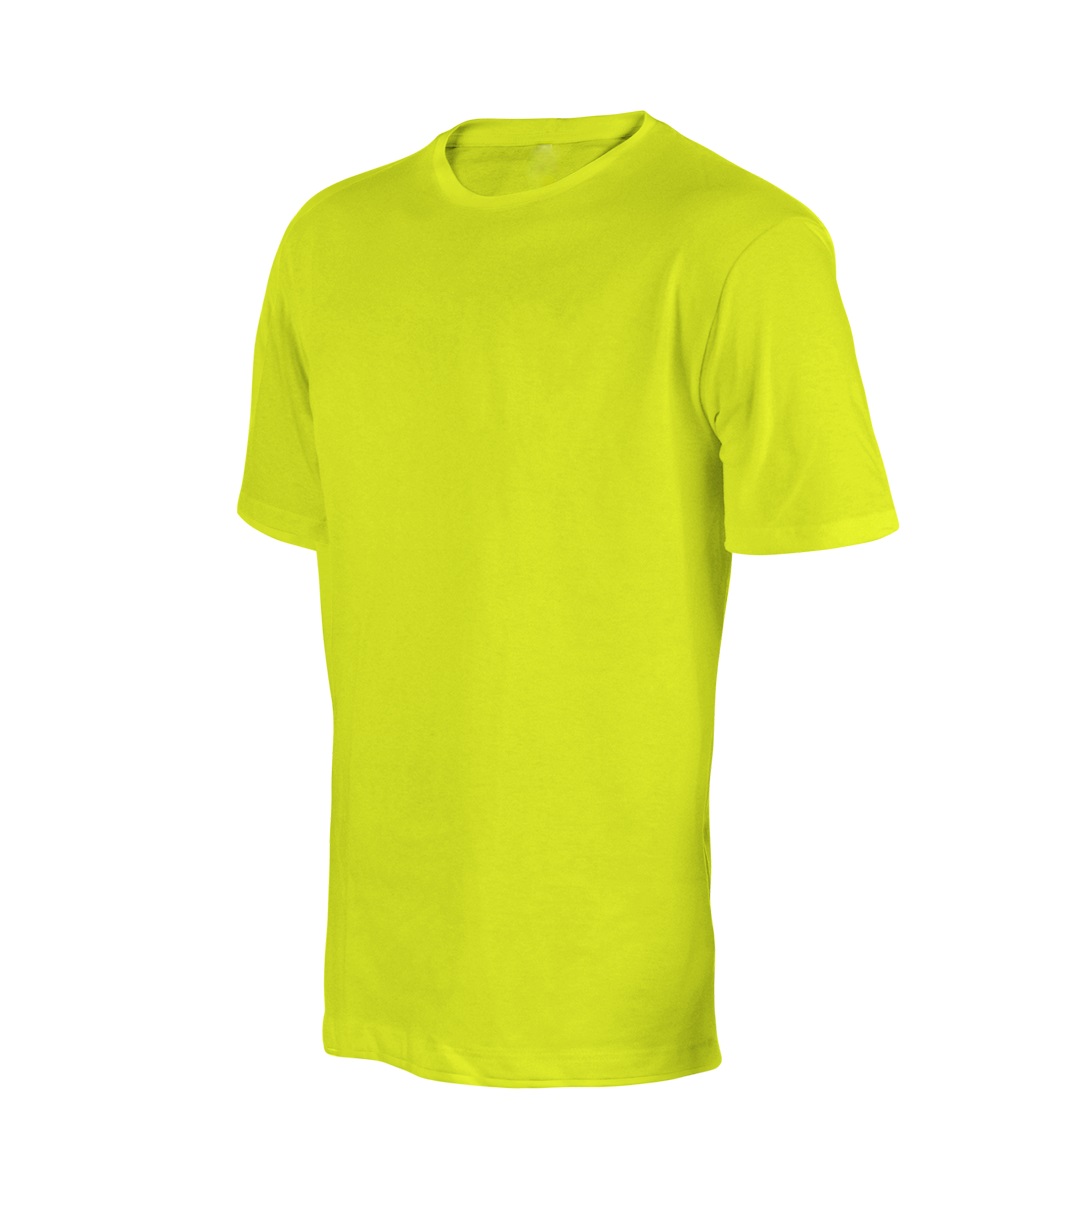 101 Lime Safety láthatósági póló (100% pamut, neon sárga)